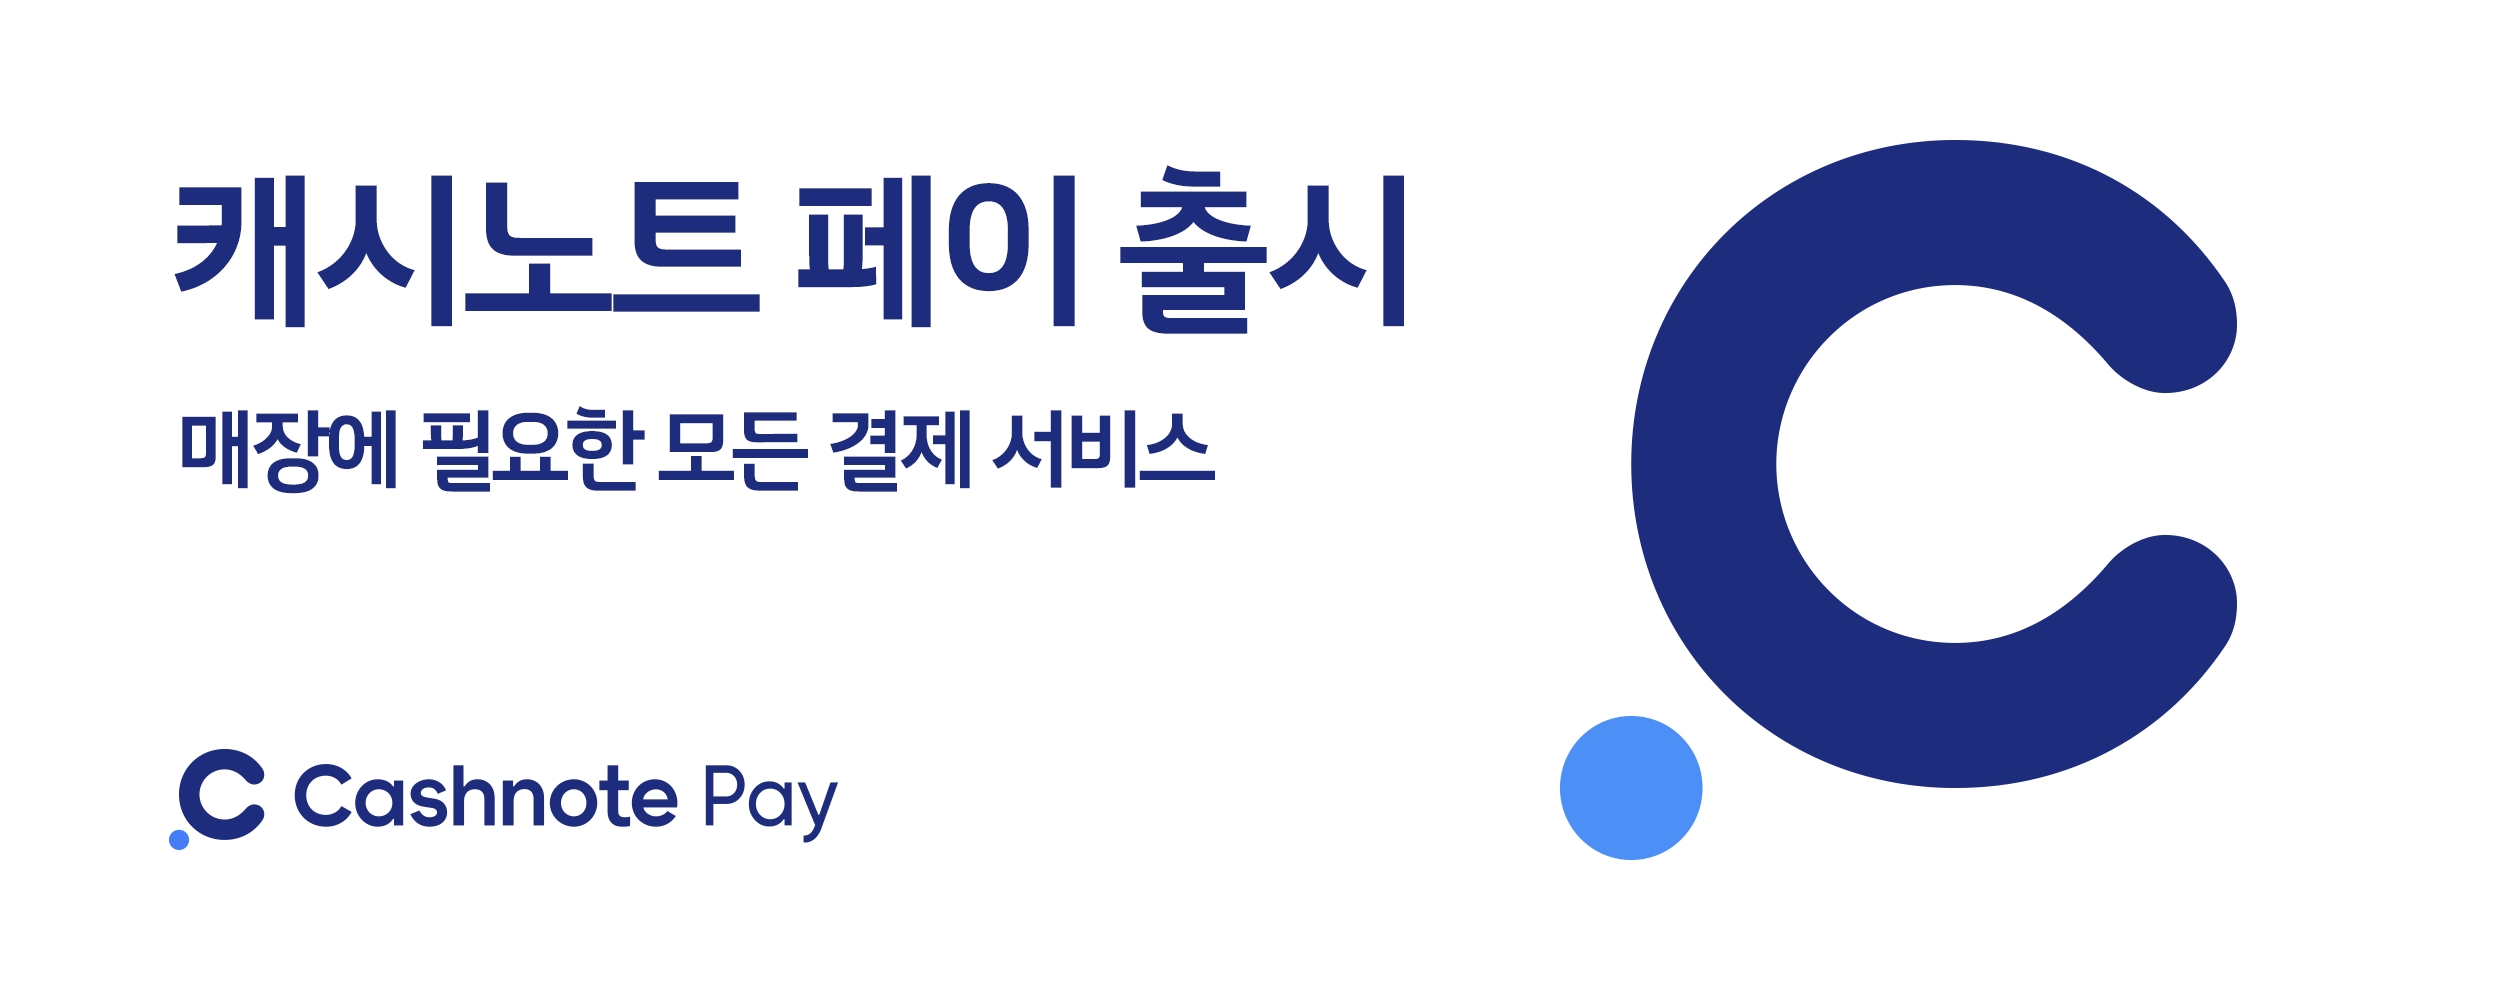 한국결제네트웍스가 모회사 한국신용데이터와 함께 새로운 결제 서비스 '캐시노트 페이'를 출시했다고 11일 밝혔다./사진 제공 = 한국결제네트웍스